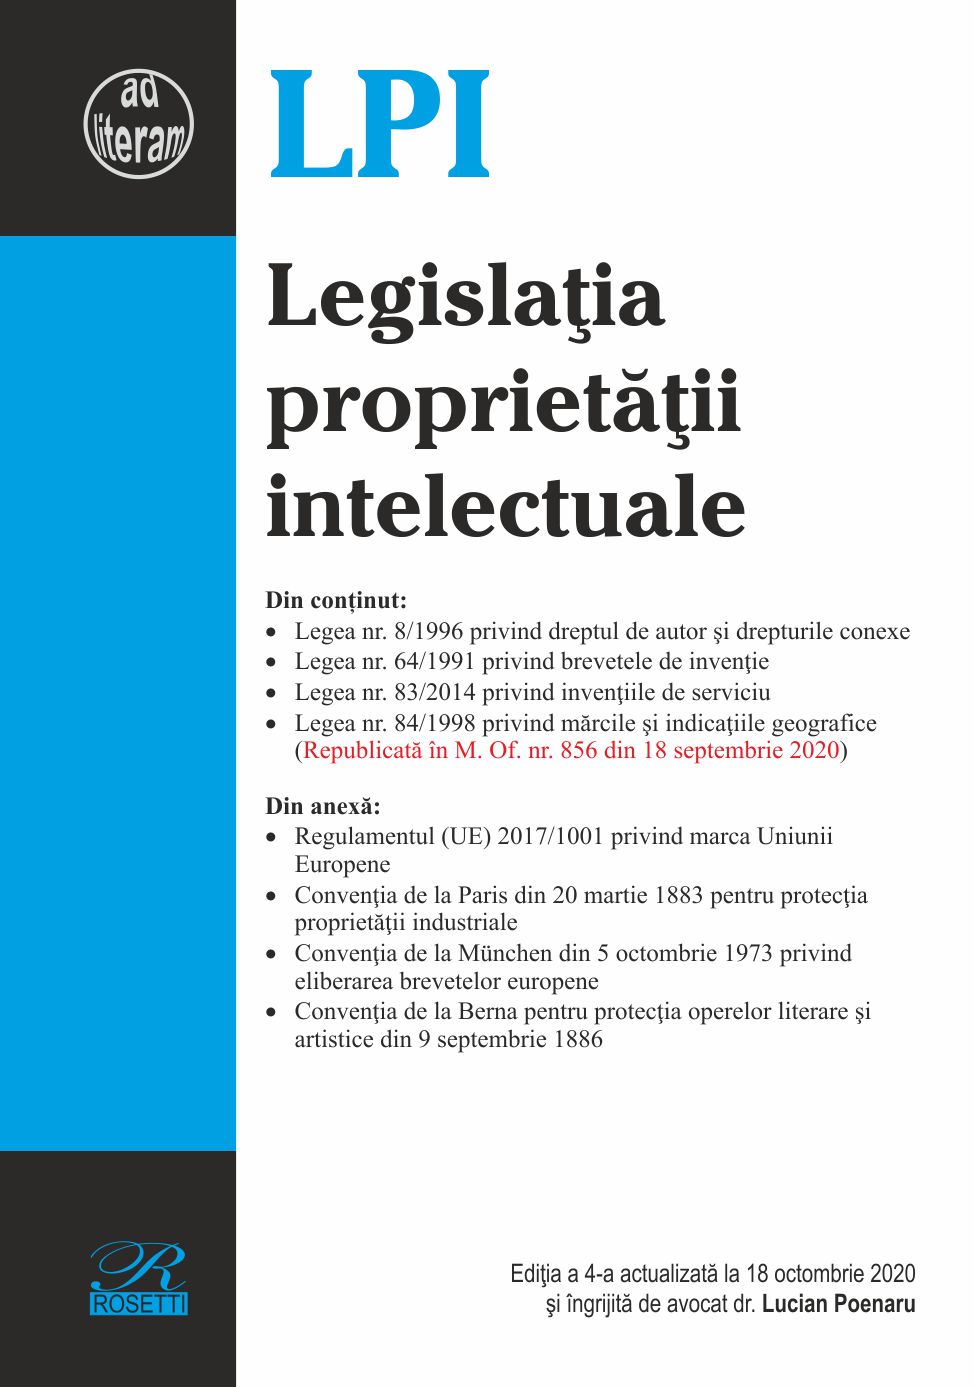 Legislatia proprietatii intelectuale. Editia a 4-a actualizata la 18 octombrie 2020 | Lucian Poenaru carturesti 2022